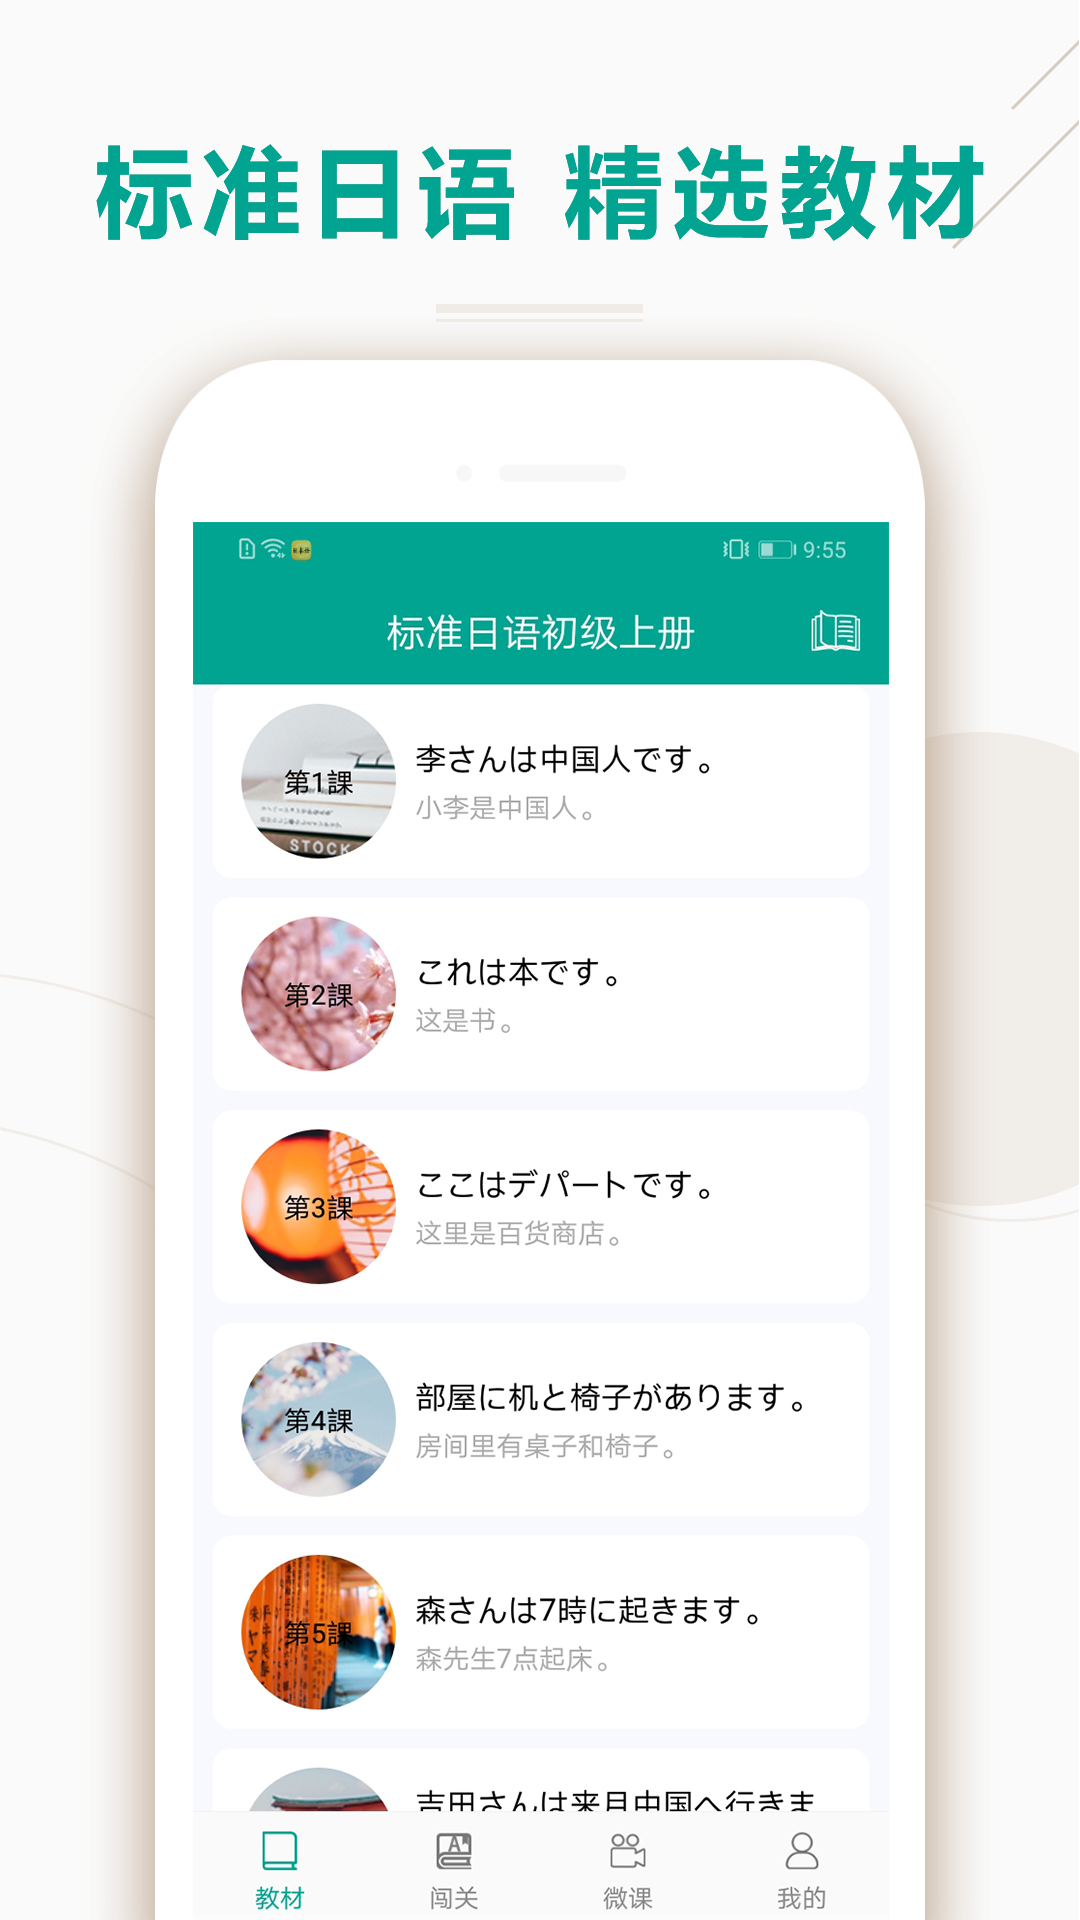 爱语吧日语听力app1.10.1